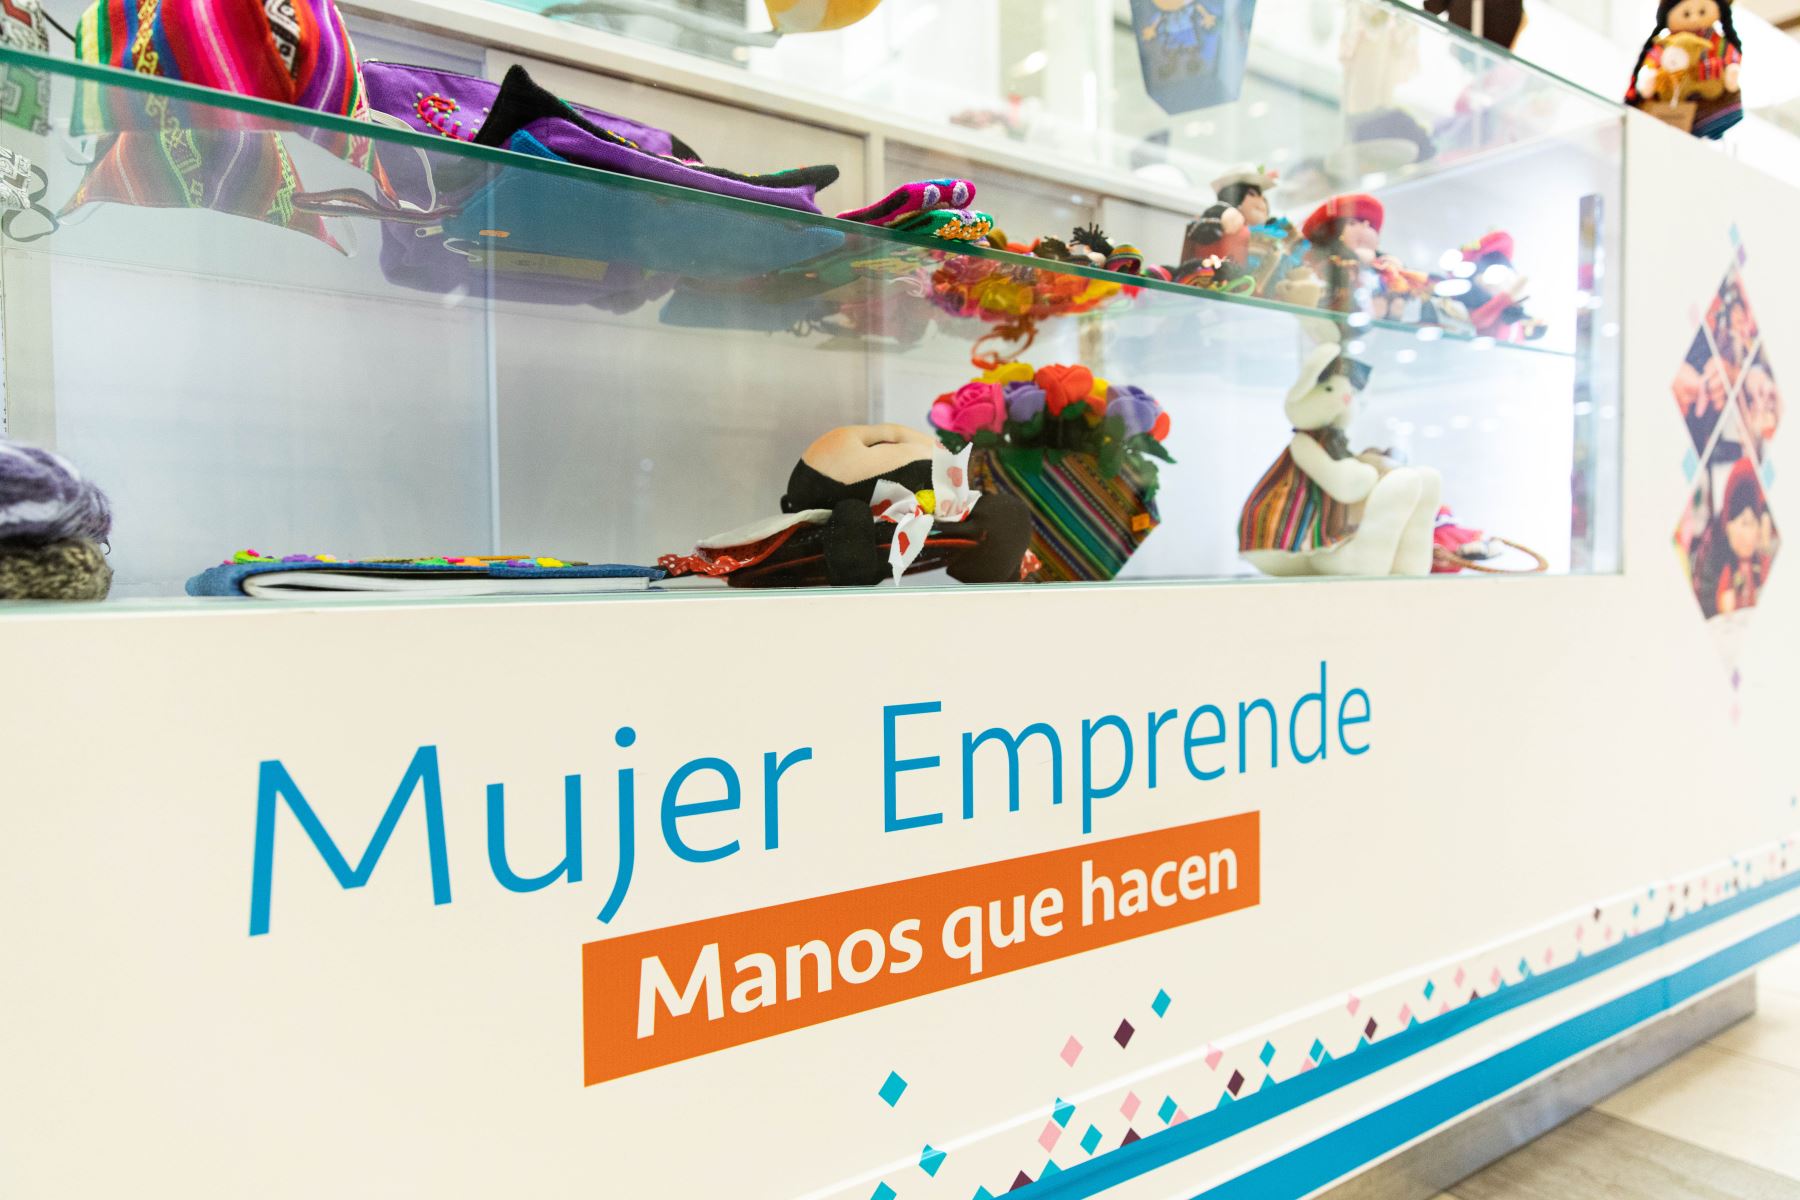 La Municipalidad Metropolitana de Lima inauguró el módulo “Mujer emprende”, en el Jockey Plaza que tiene como objetivo beneficiar a mujeres de diferentes distritos de la ciudad, generando oportunidades de negocio para mejorar su calidad de vida y promover su independencia económica. Foto: MML